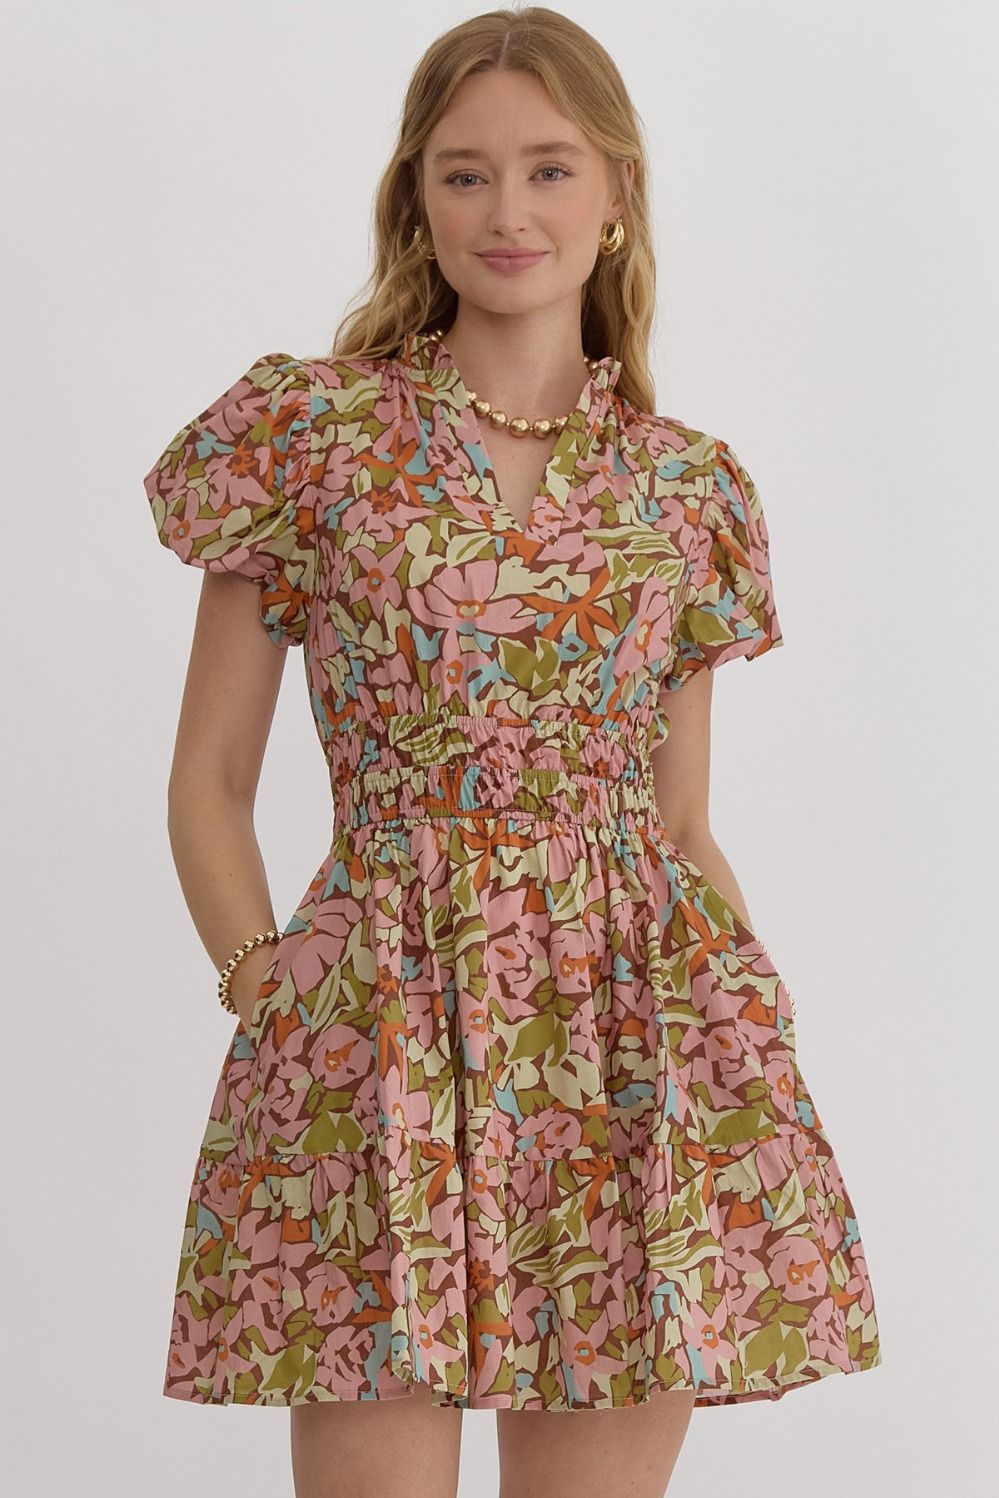 The Bridget Mini Dress